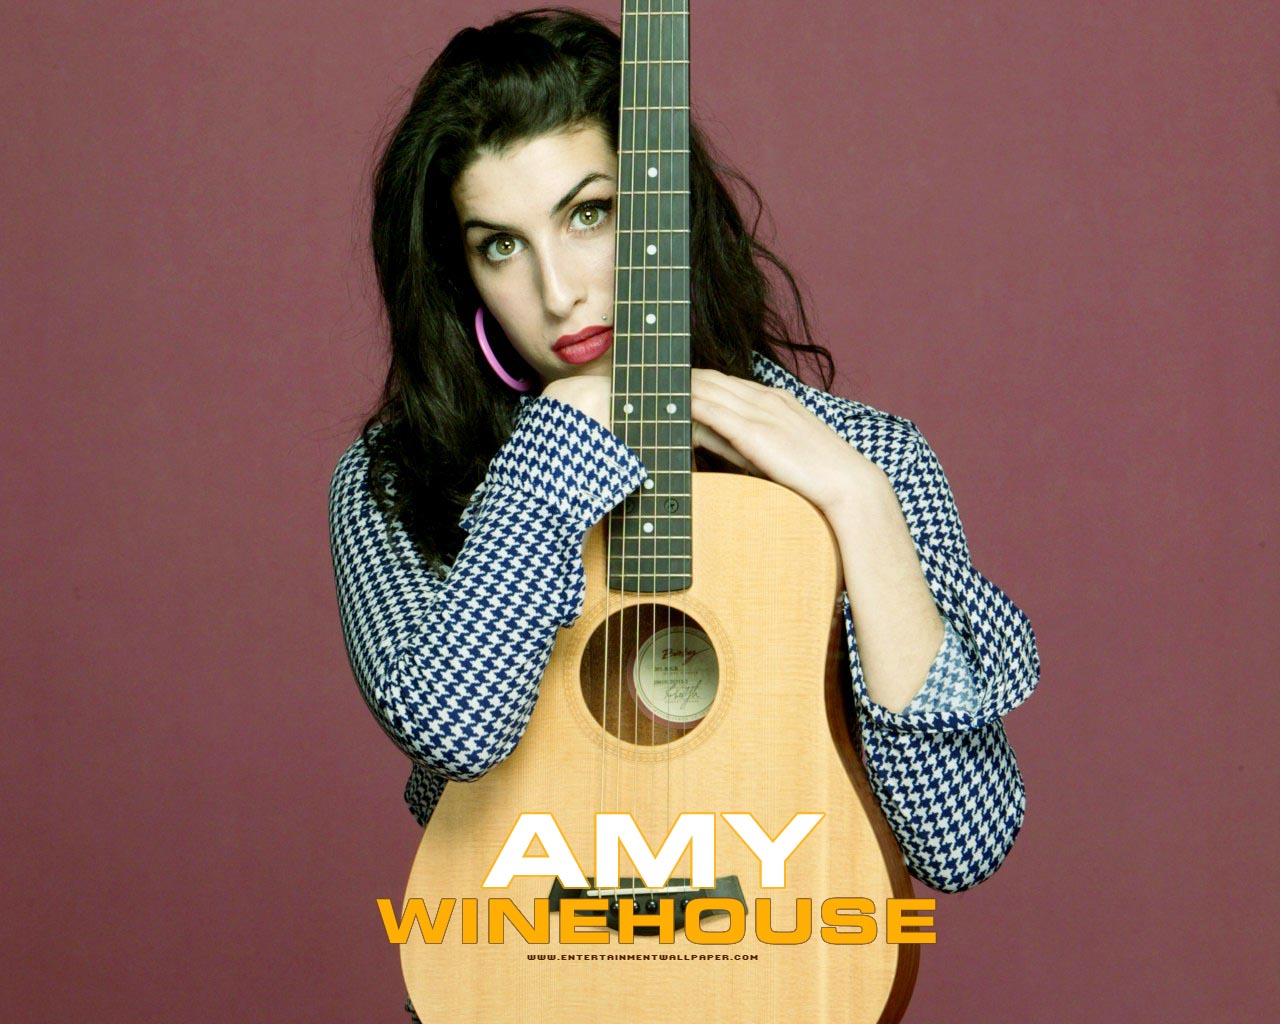 http://3.bp.blogspot.com/-hkdnyIsZzfg/UNHUtu9quYI/AAAAAAAAn7I/z7bcVVyWpV0/s1600/amy-winehouse-guitar.jpg